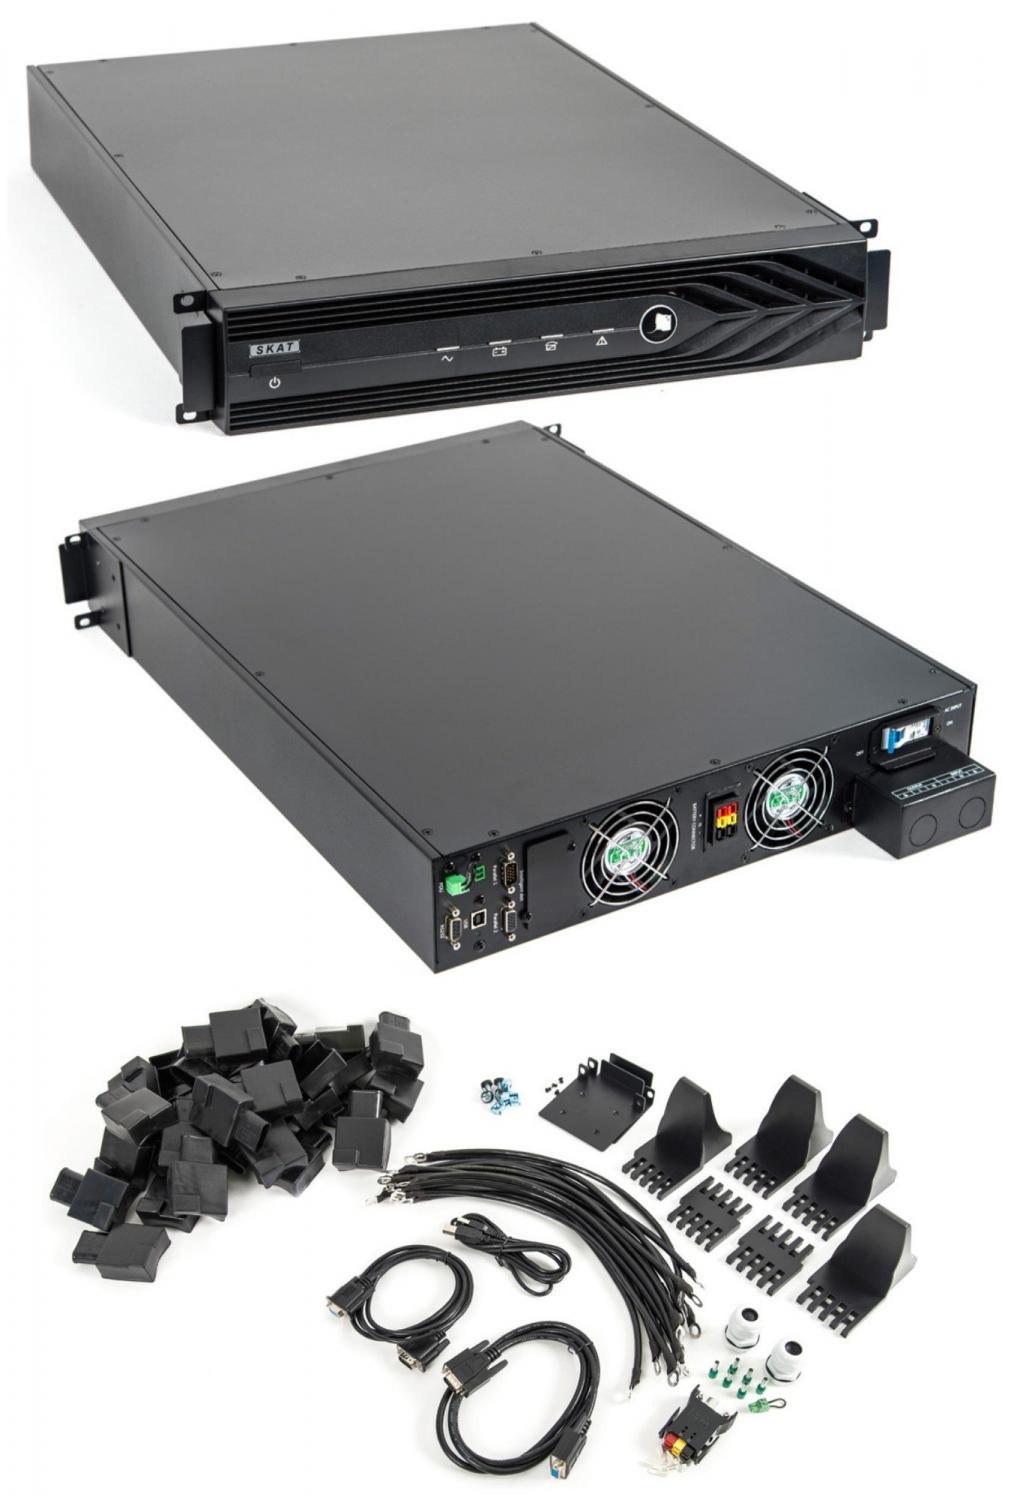 Все Бастион SKAT-UPS 10 000 RACK источник бесперебойного питания видеонаблюдения в магазине Vidos Group